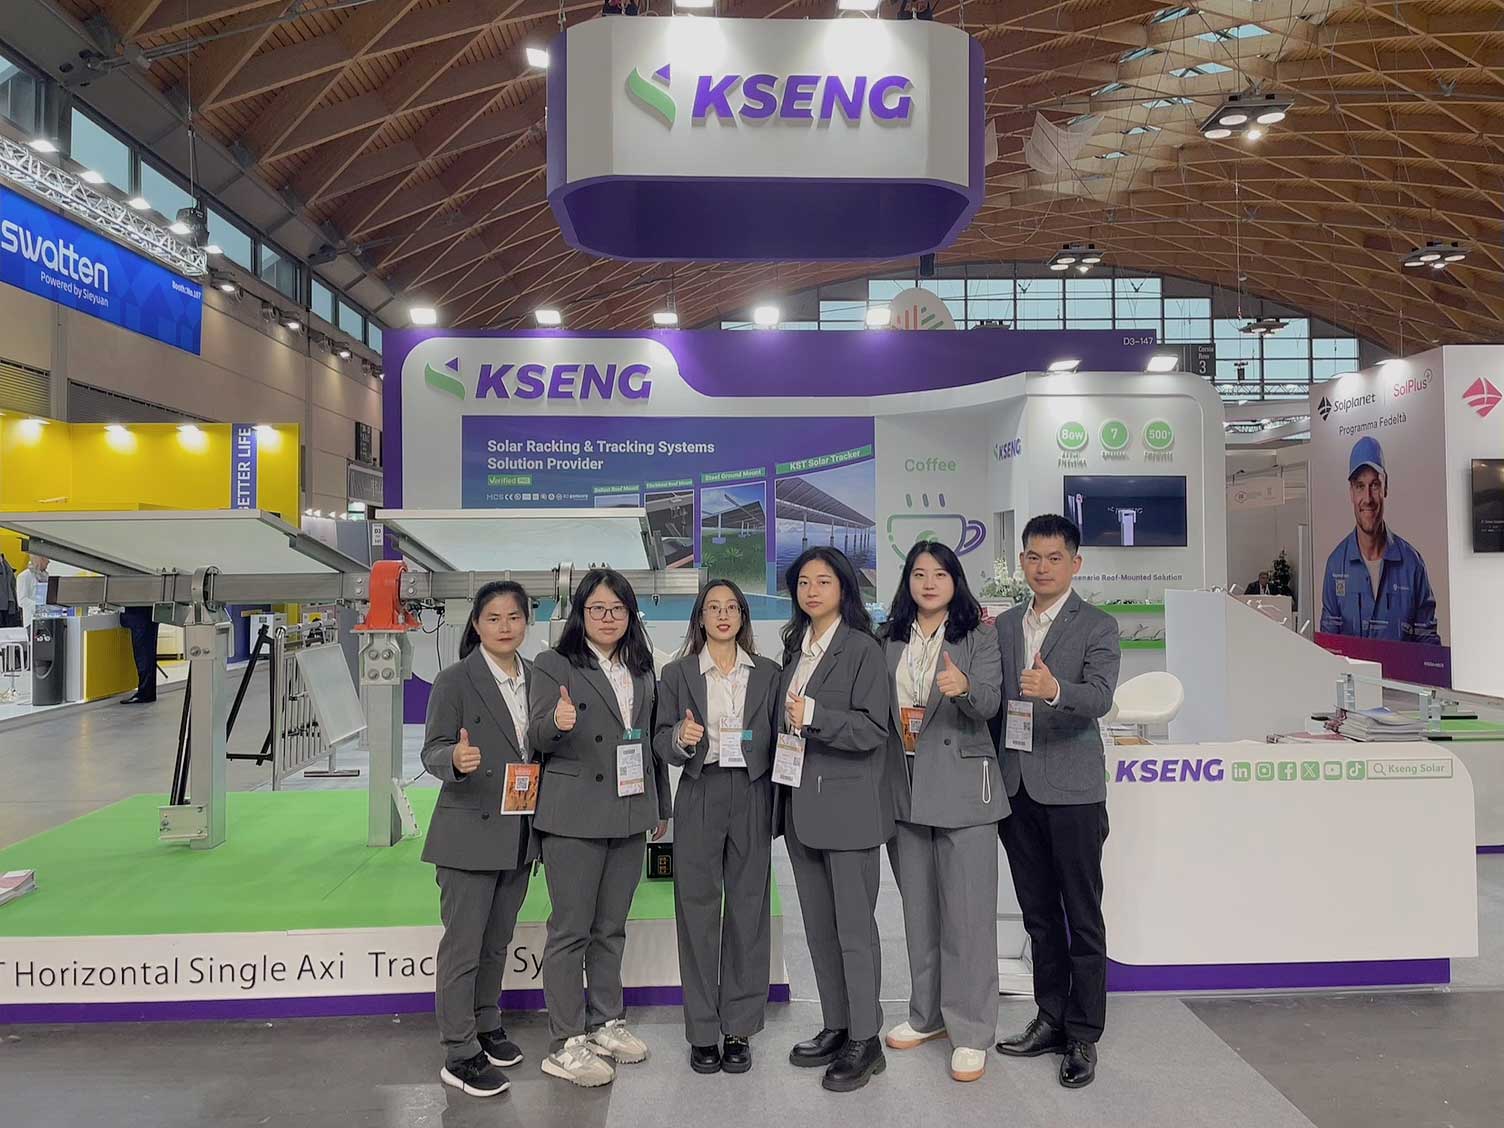 Kseng Solar fait une impression remarquable lors de cinq expositions en Europe avec ses solutions innovantes de rayonnage solaire